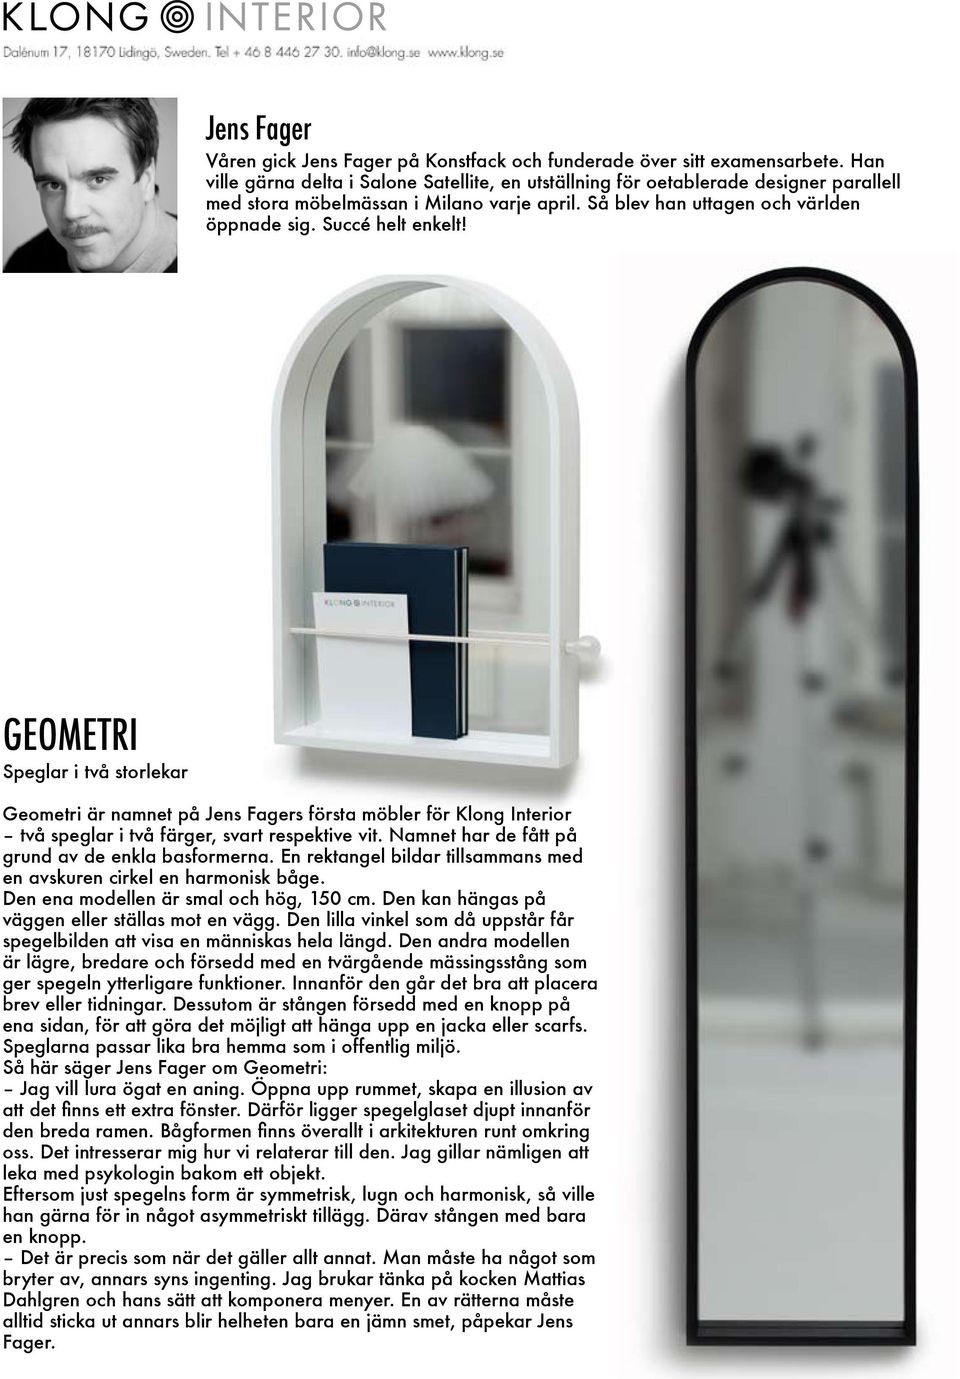 GEOMETRI Speglar i två storlekar Geometri är namnet på Jens Fagers första möbler för Klong Interior två speglar i två färger, svart respektive vit. Namnet har de fått på grund av de enkla basformerna.